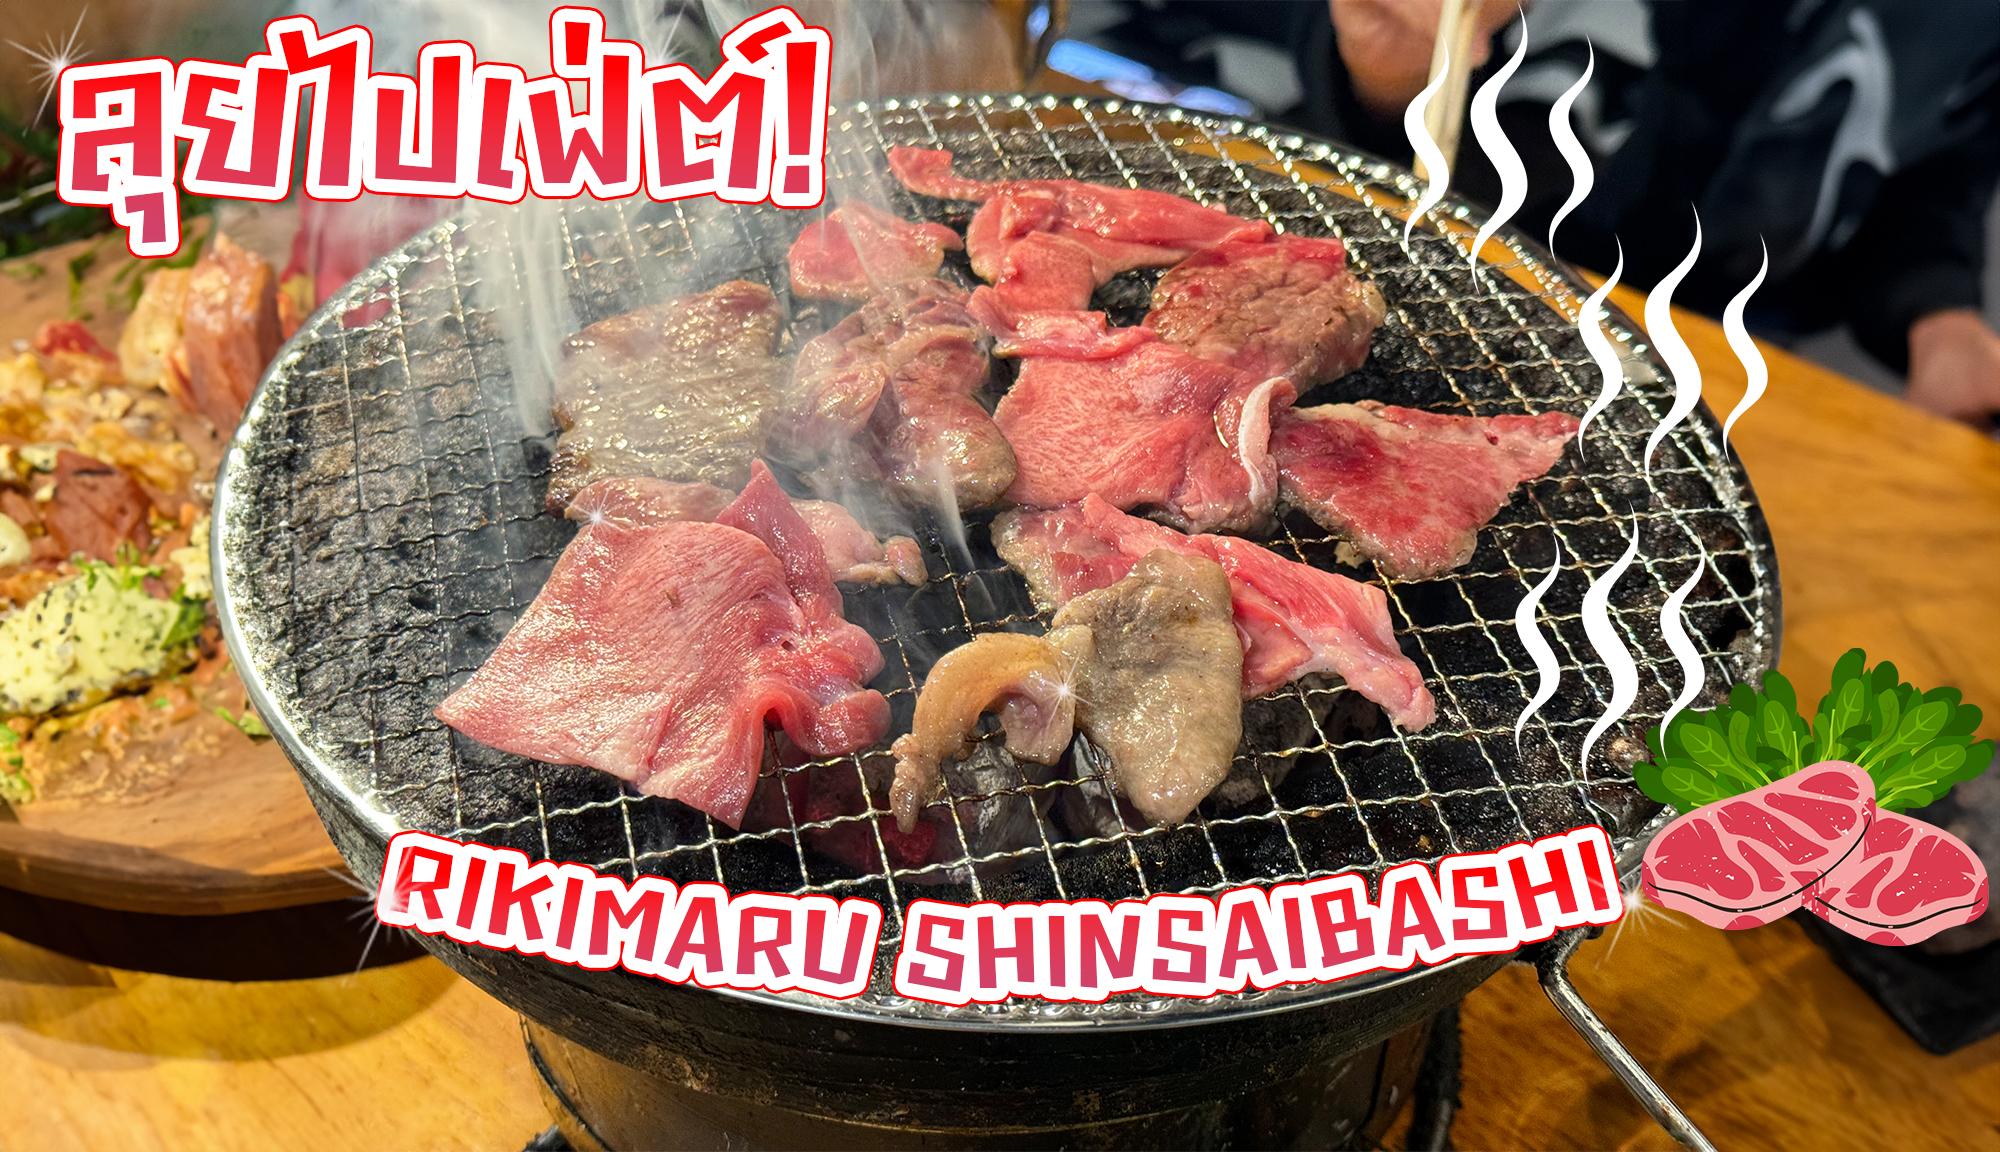 ลุยไปบุฟเฟ่ต์ Rikimaru Shinsaibashi : บุฟเฟ่ต์ปิ้งย่างพรีเมี่ยม ในงบเบาๆ โอซาก้ามากินแล้ว